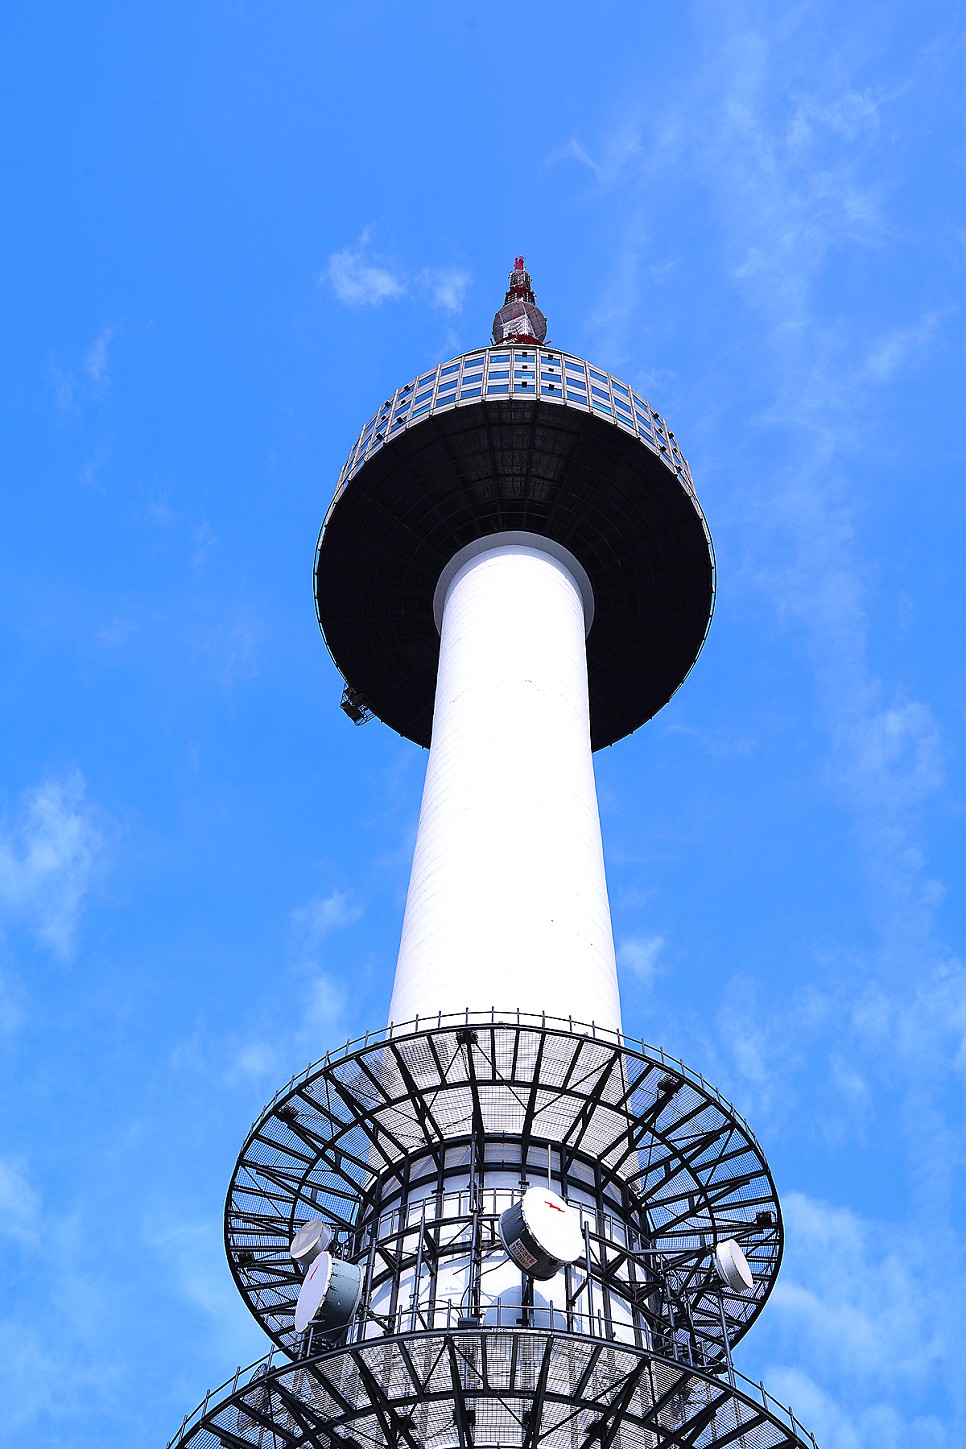 가을 나들이 서울 데이트 추천 코스 남산 타워 전망대 케이블카 할인